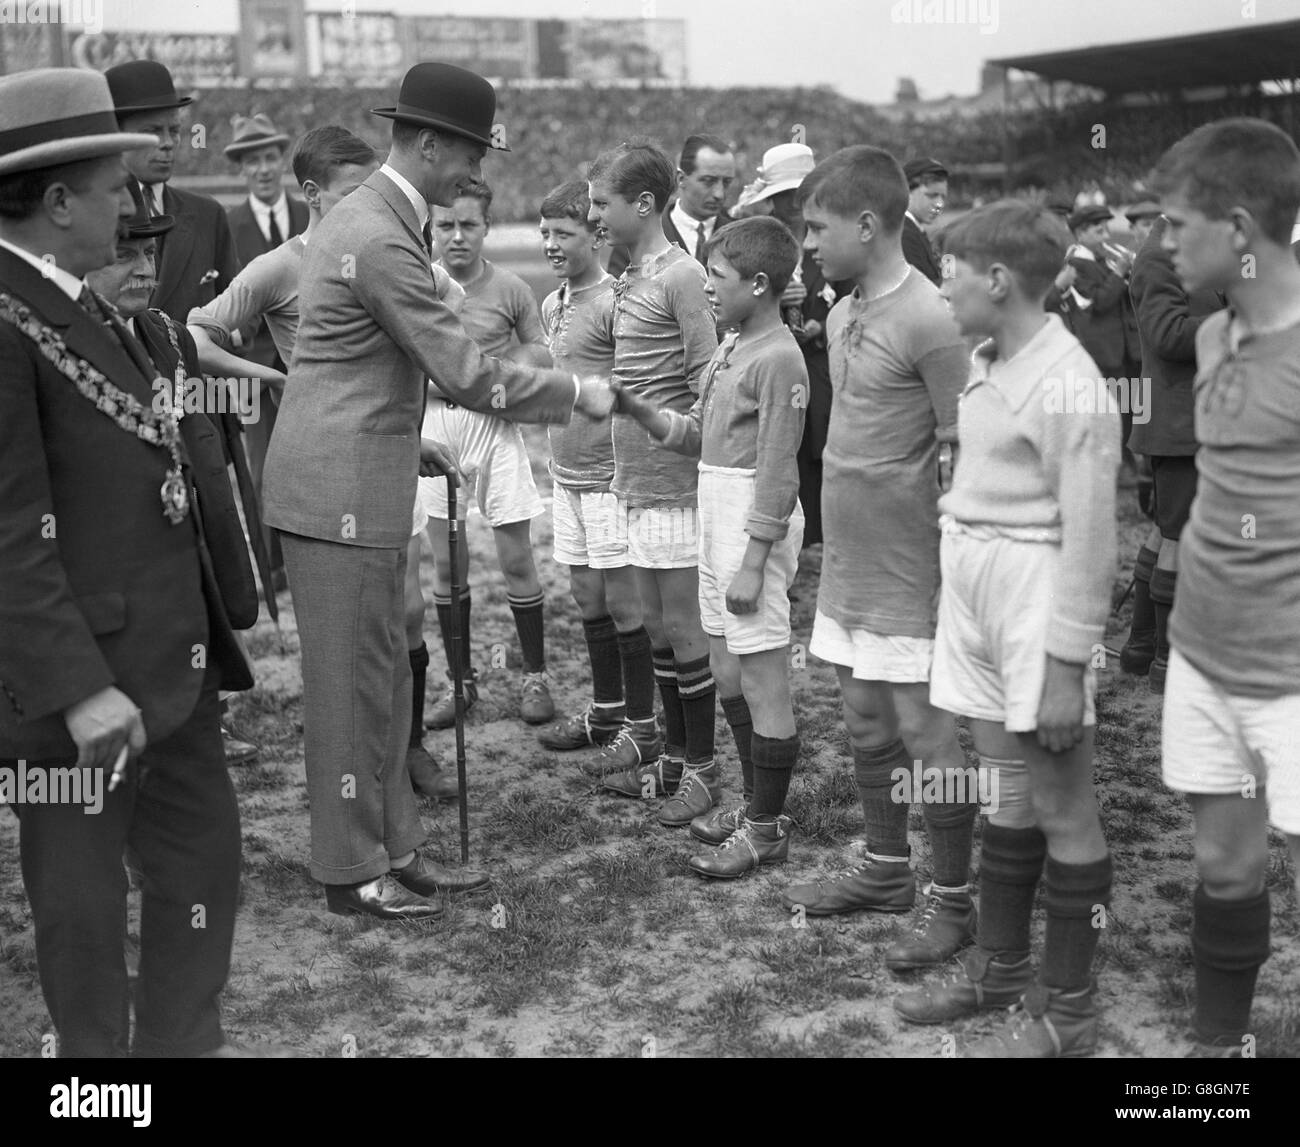 El Duque de York - Colegiales partido de fútbol - Stamford Bridge, Londres Foto de stock